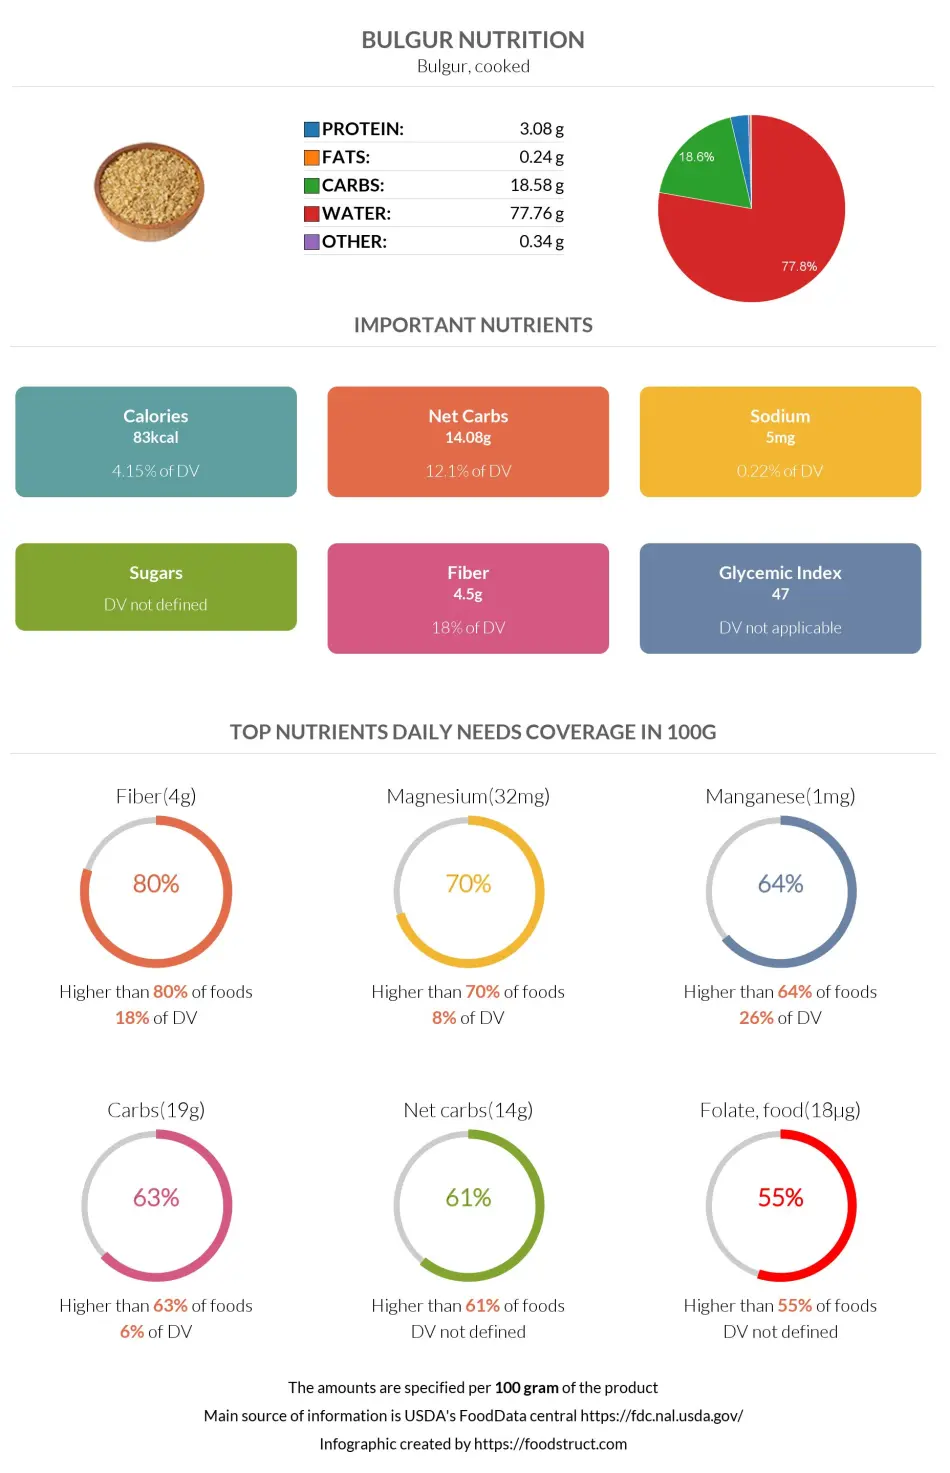 Bulgur nutrition infographic